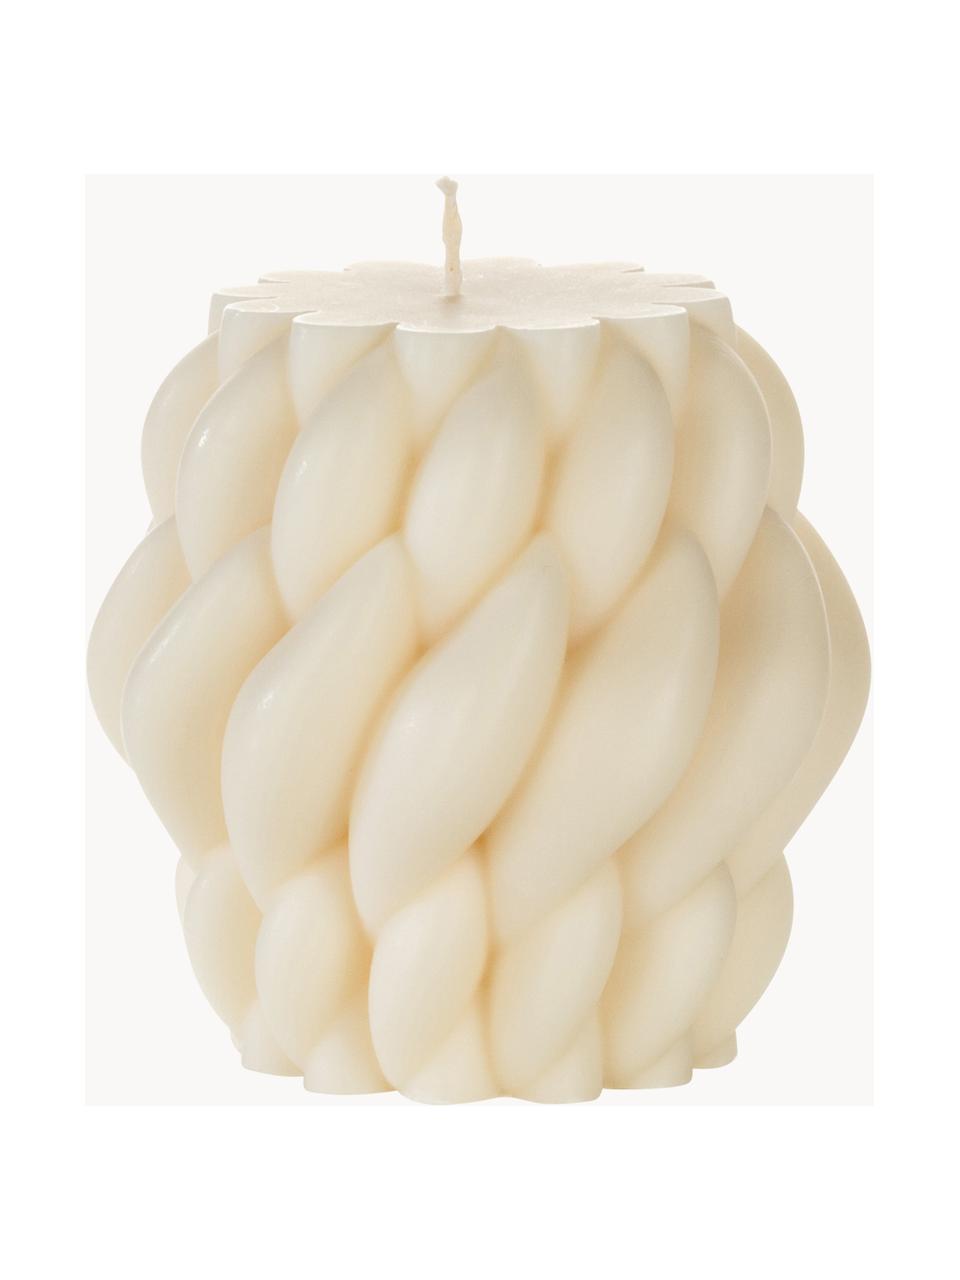 Ručně vyrobená designová svíčka Karla, V 9 cm, Vosk, Krémově bílá, Ø 8 cm, V 9 cm